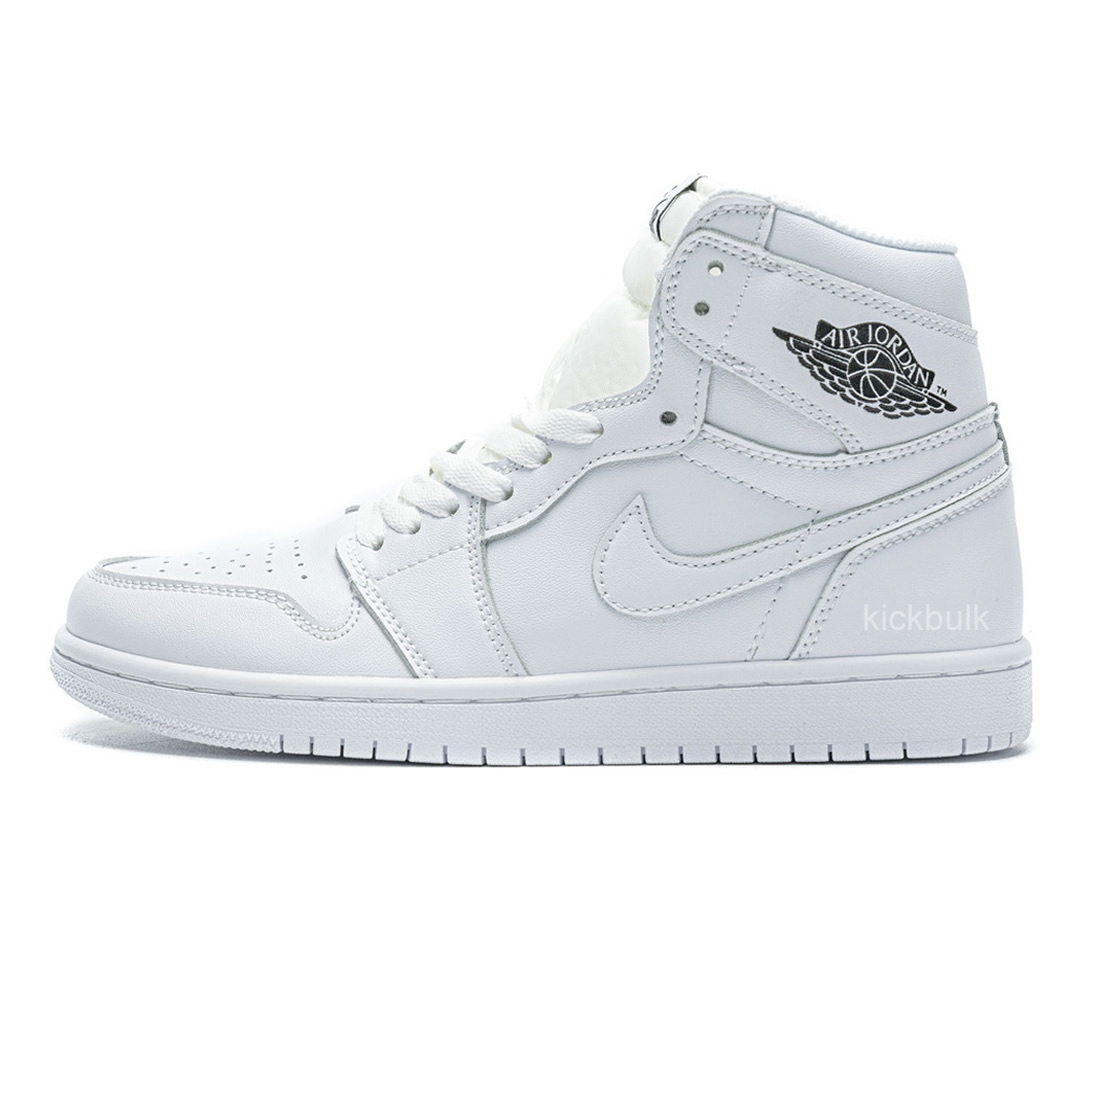 Nike Air Jordan 1 High All White 555088 111 1 - kickbulk.cc